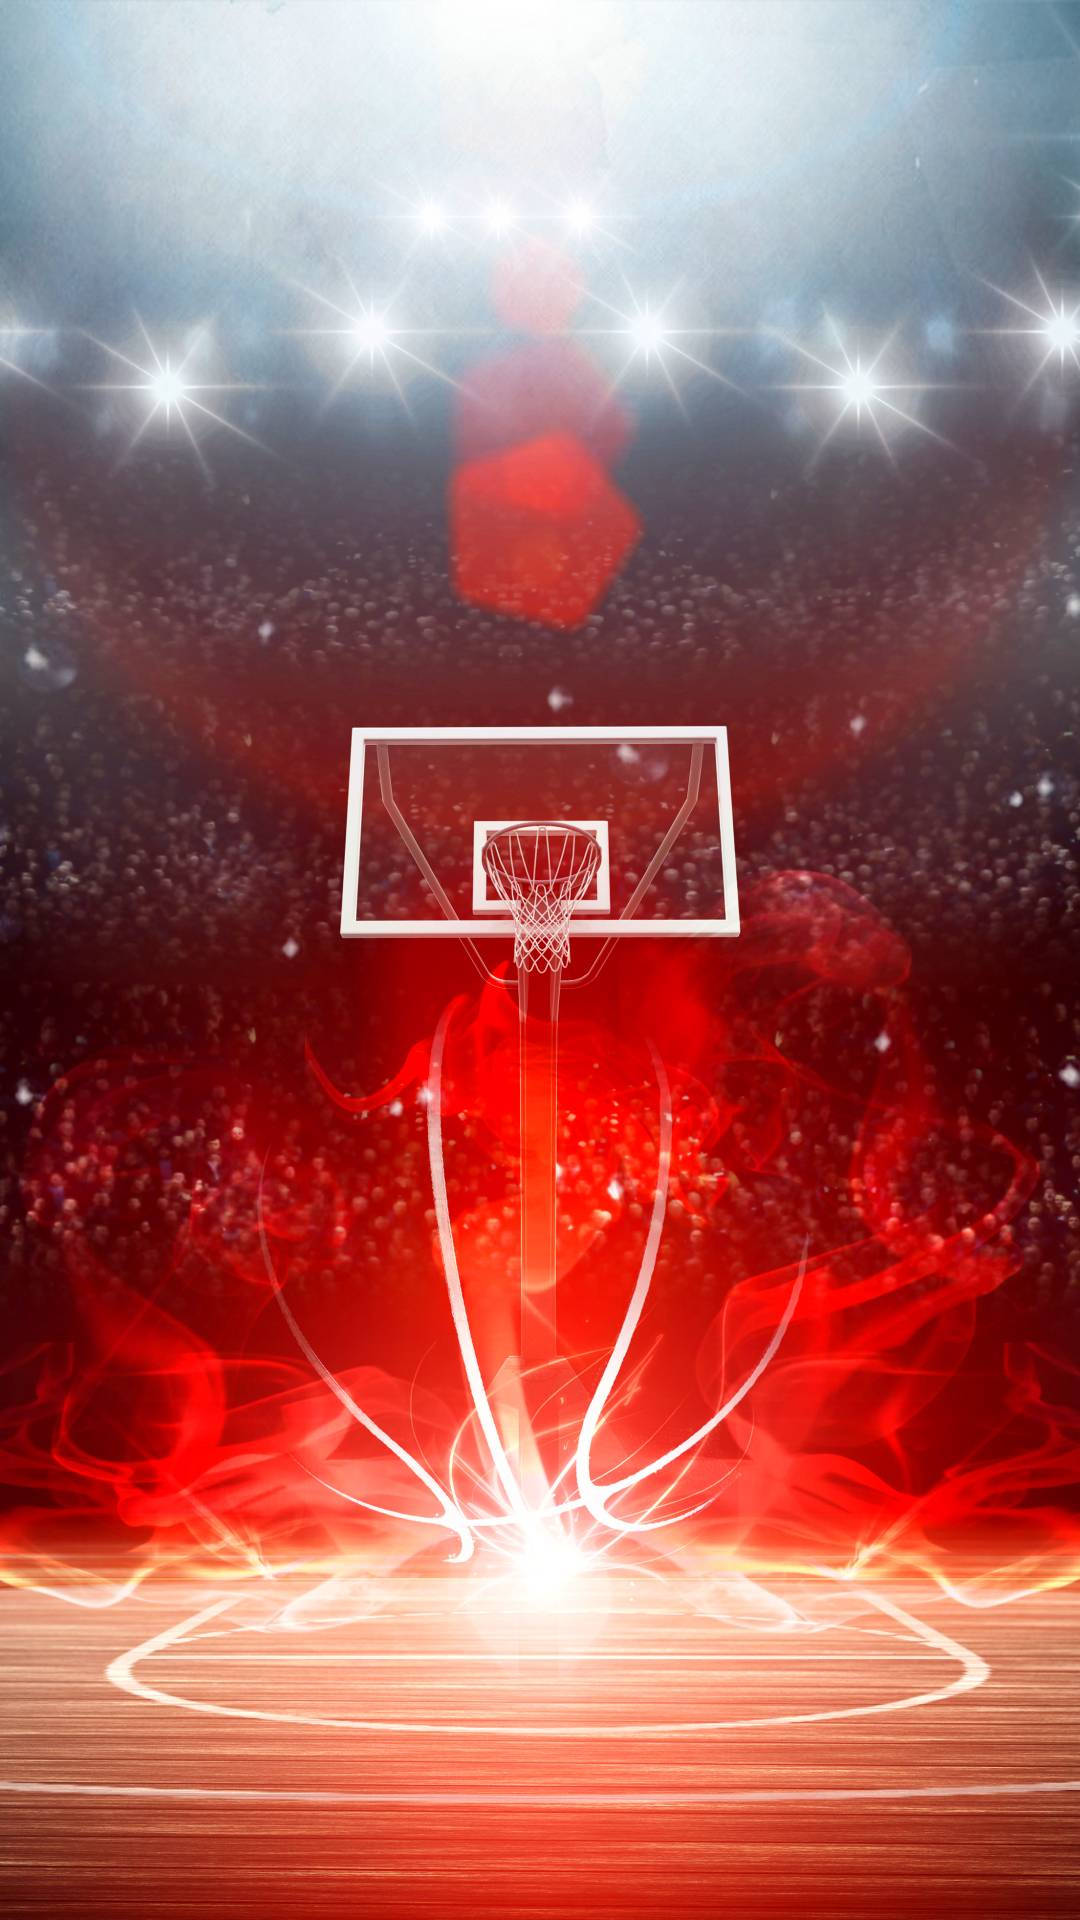 Coolesbasketball-motiv In Leuchtendem Rot. Wallpaper